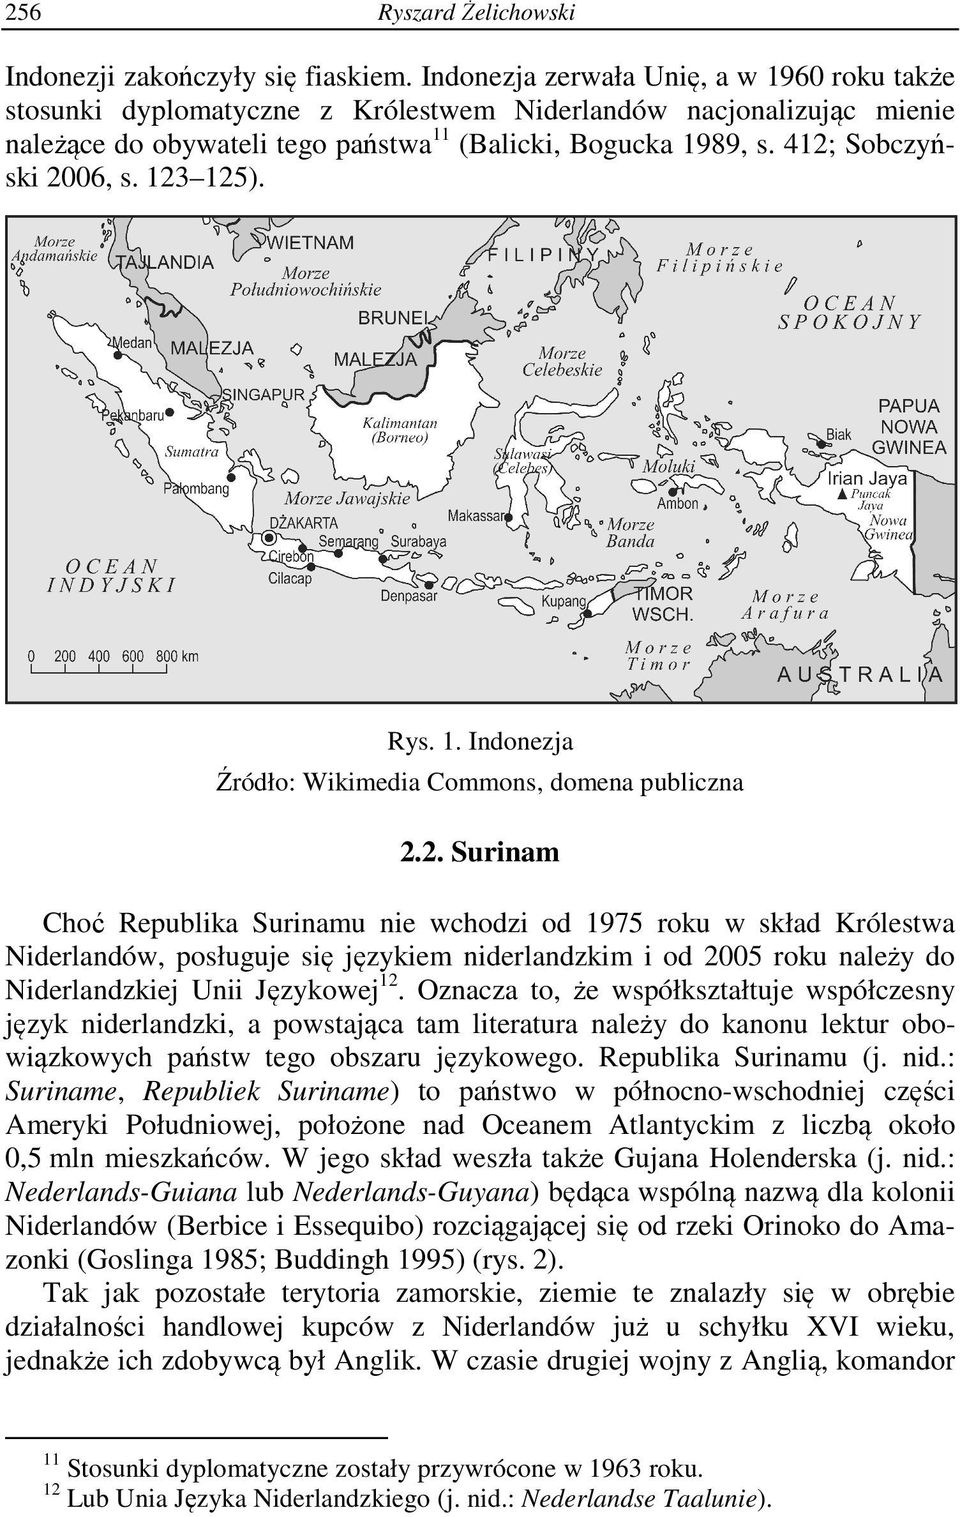 412; Sobczyński 2006, s. 123 125). Rys. 1. Indonezja Źródło: Wikimedia Commons, domena publiczna 2.2. Surinam Choć Republika Surinamu nie wchodzi od 1975 roku w skład Królestwa Niderlandów, posługuje się językiem niderlandzkim i od 2005 roku należy do Niderlandzkiej Unii Językowej 12.